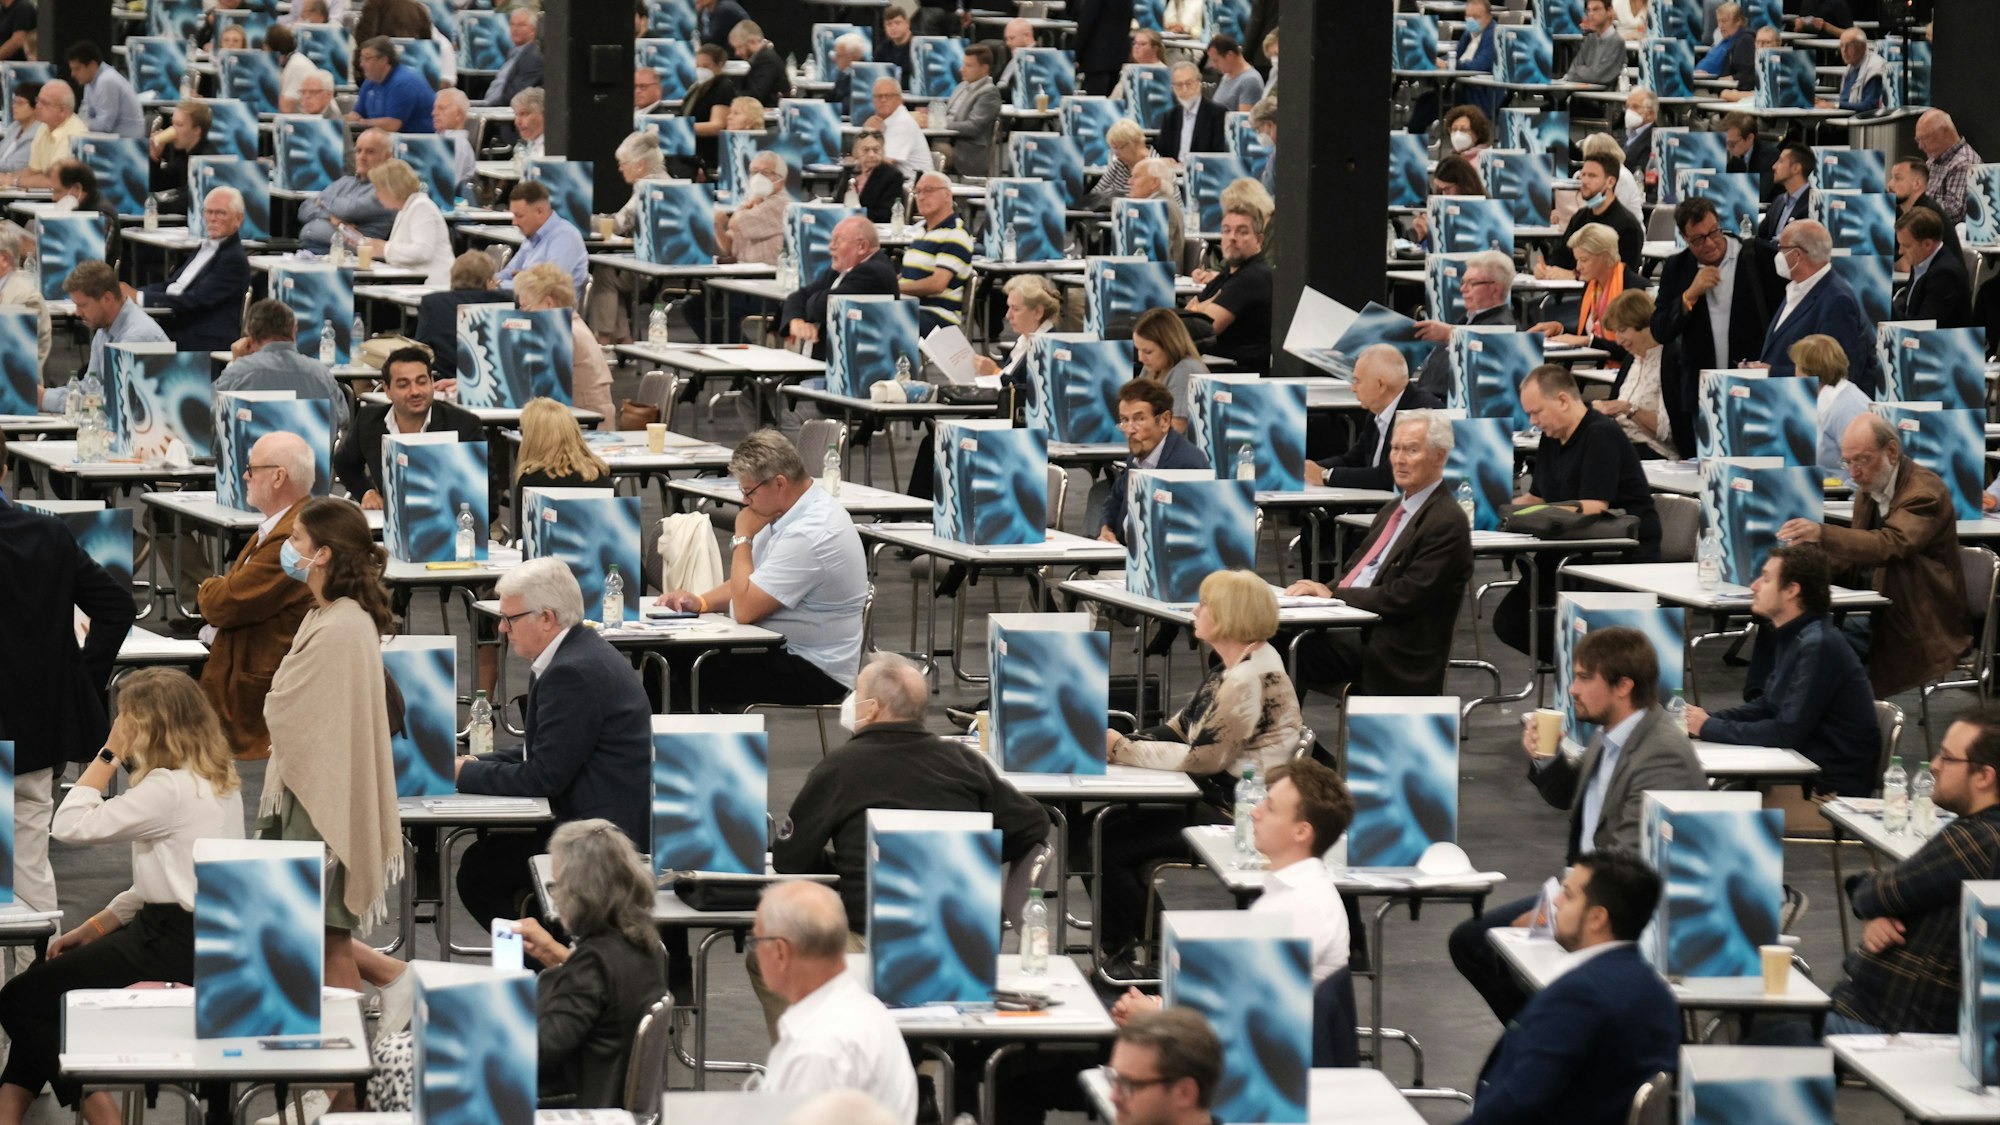 Das Bild zeigt die Kölner Messe von innen mit vielen tischen, hinter denen CDU-Mitglieder sitzen.